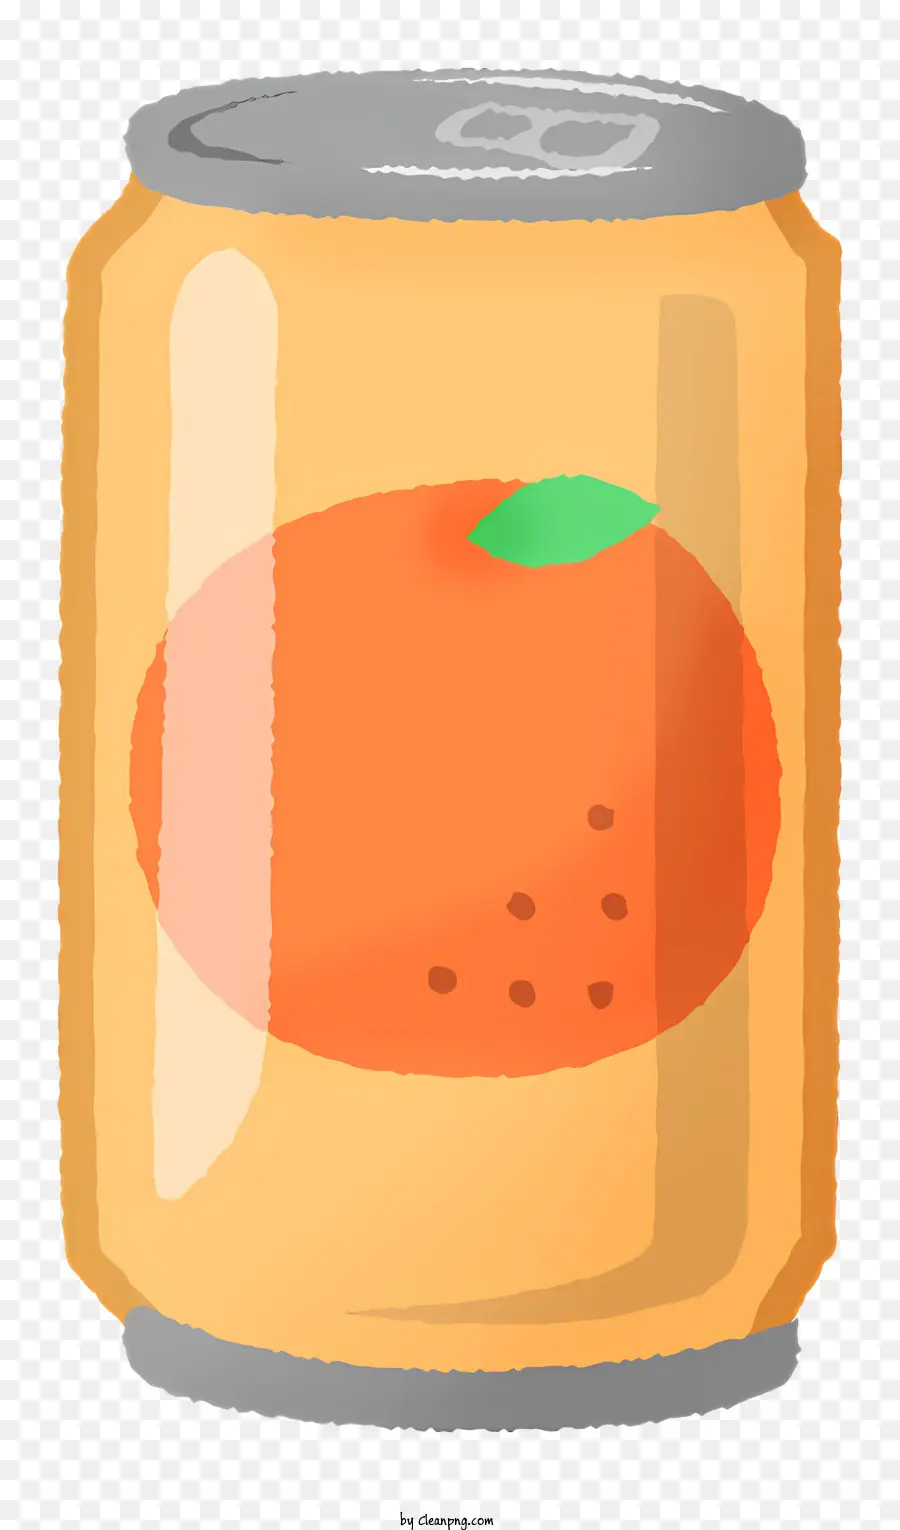 icona succo d'arancia succo d'arancia in scatola bevanda non alcolica agrumi - Succo d'arancia in scatola con etichetta bianca visibile